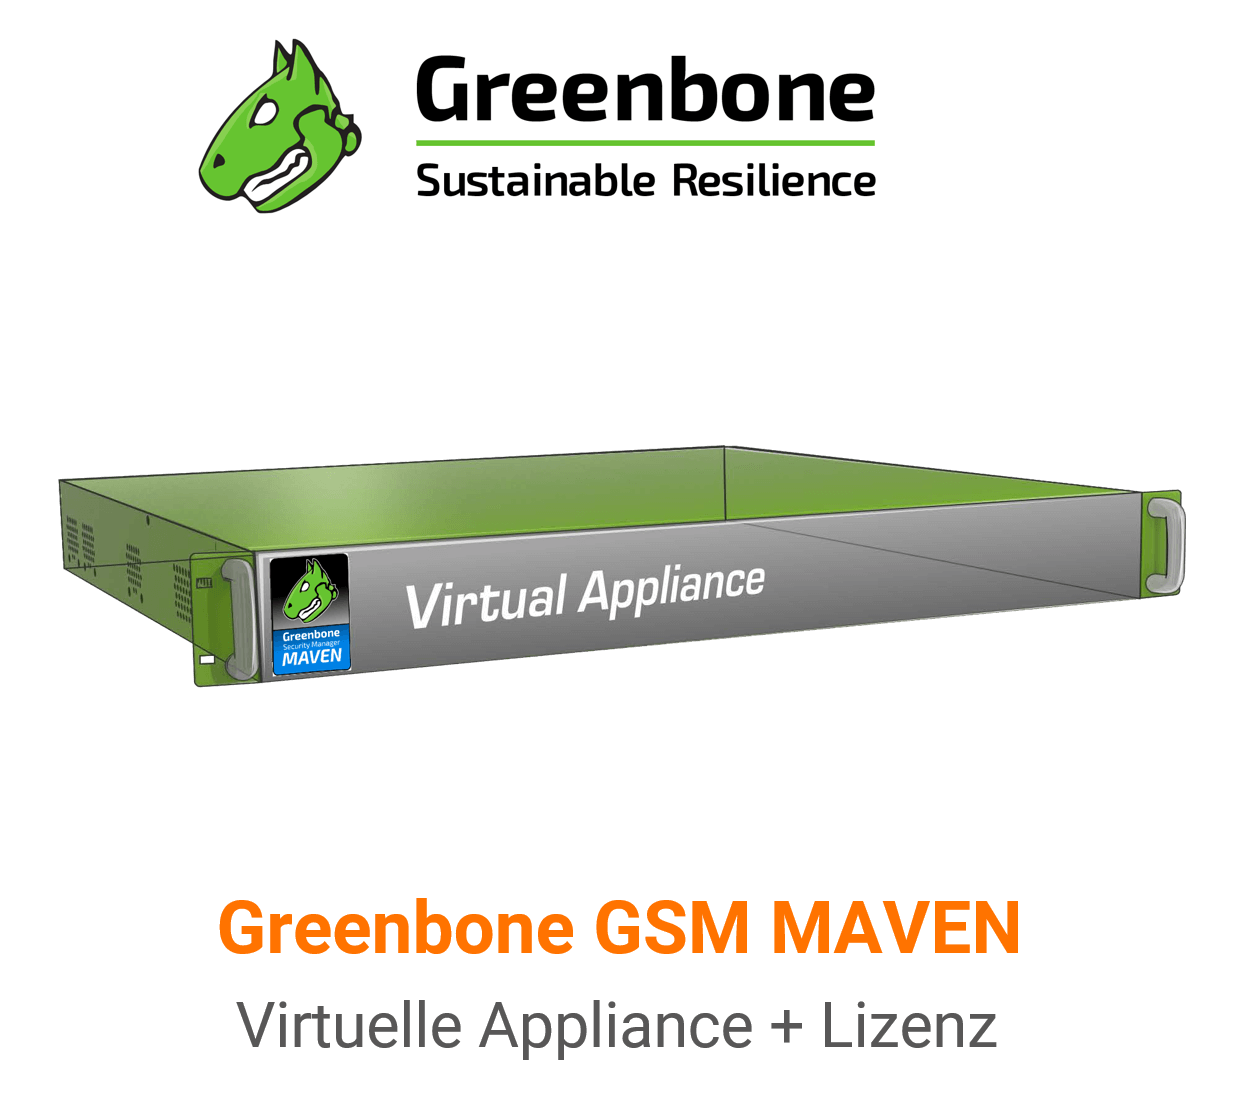 Greenbone GSM-MAVEN Virtuelle Appliance Vorschaubild mit Greenbone logo und Modellbezeichnung